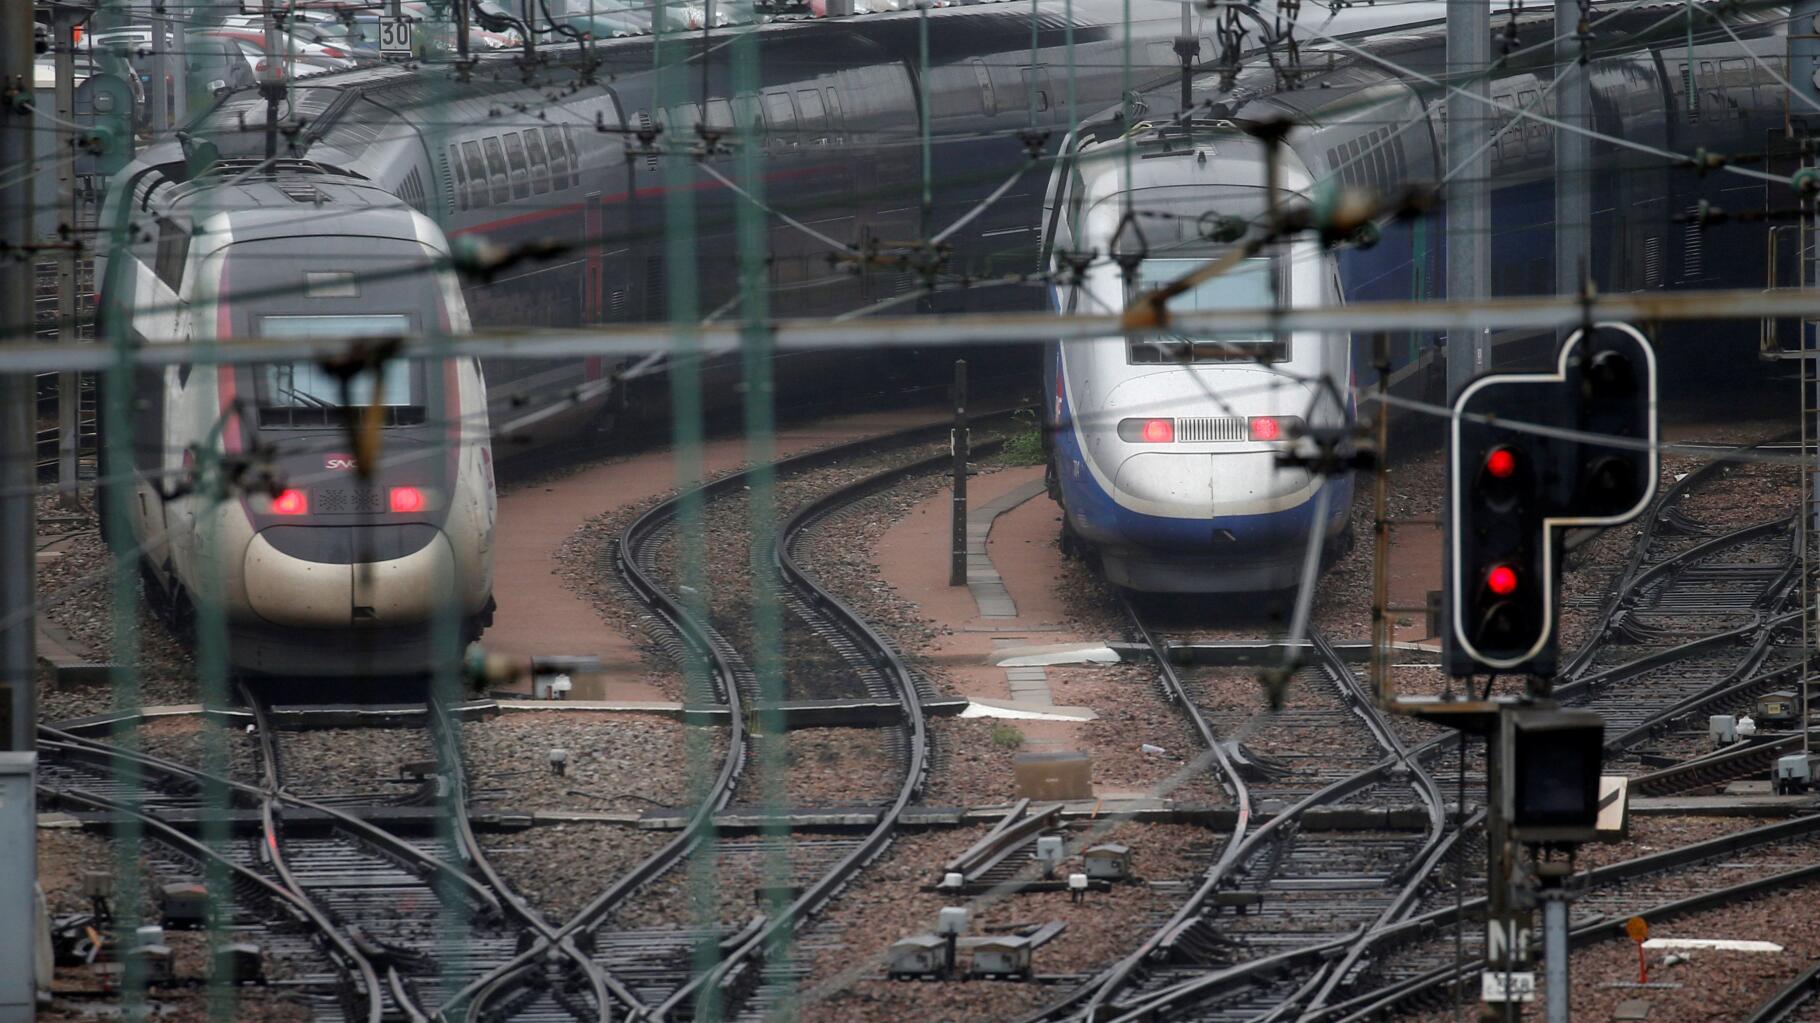 Réforme de la SNCF - La vérité des chiffres